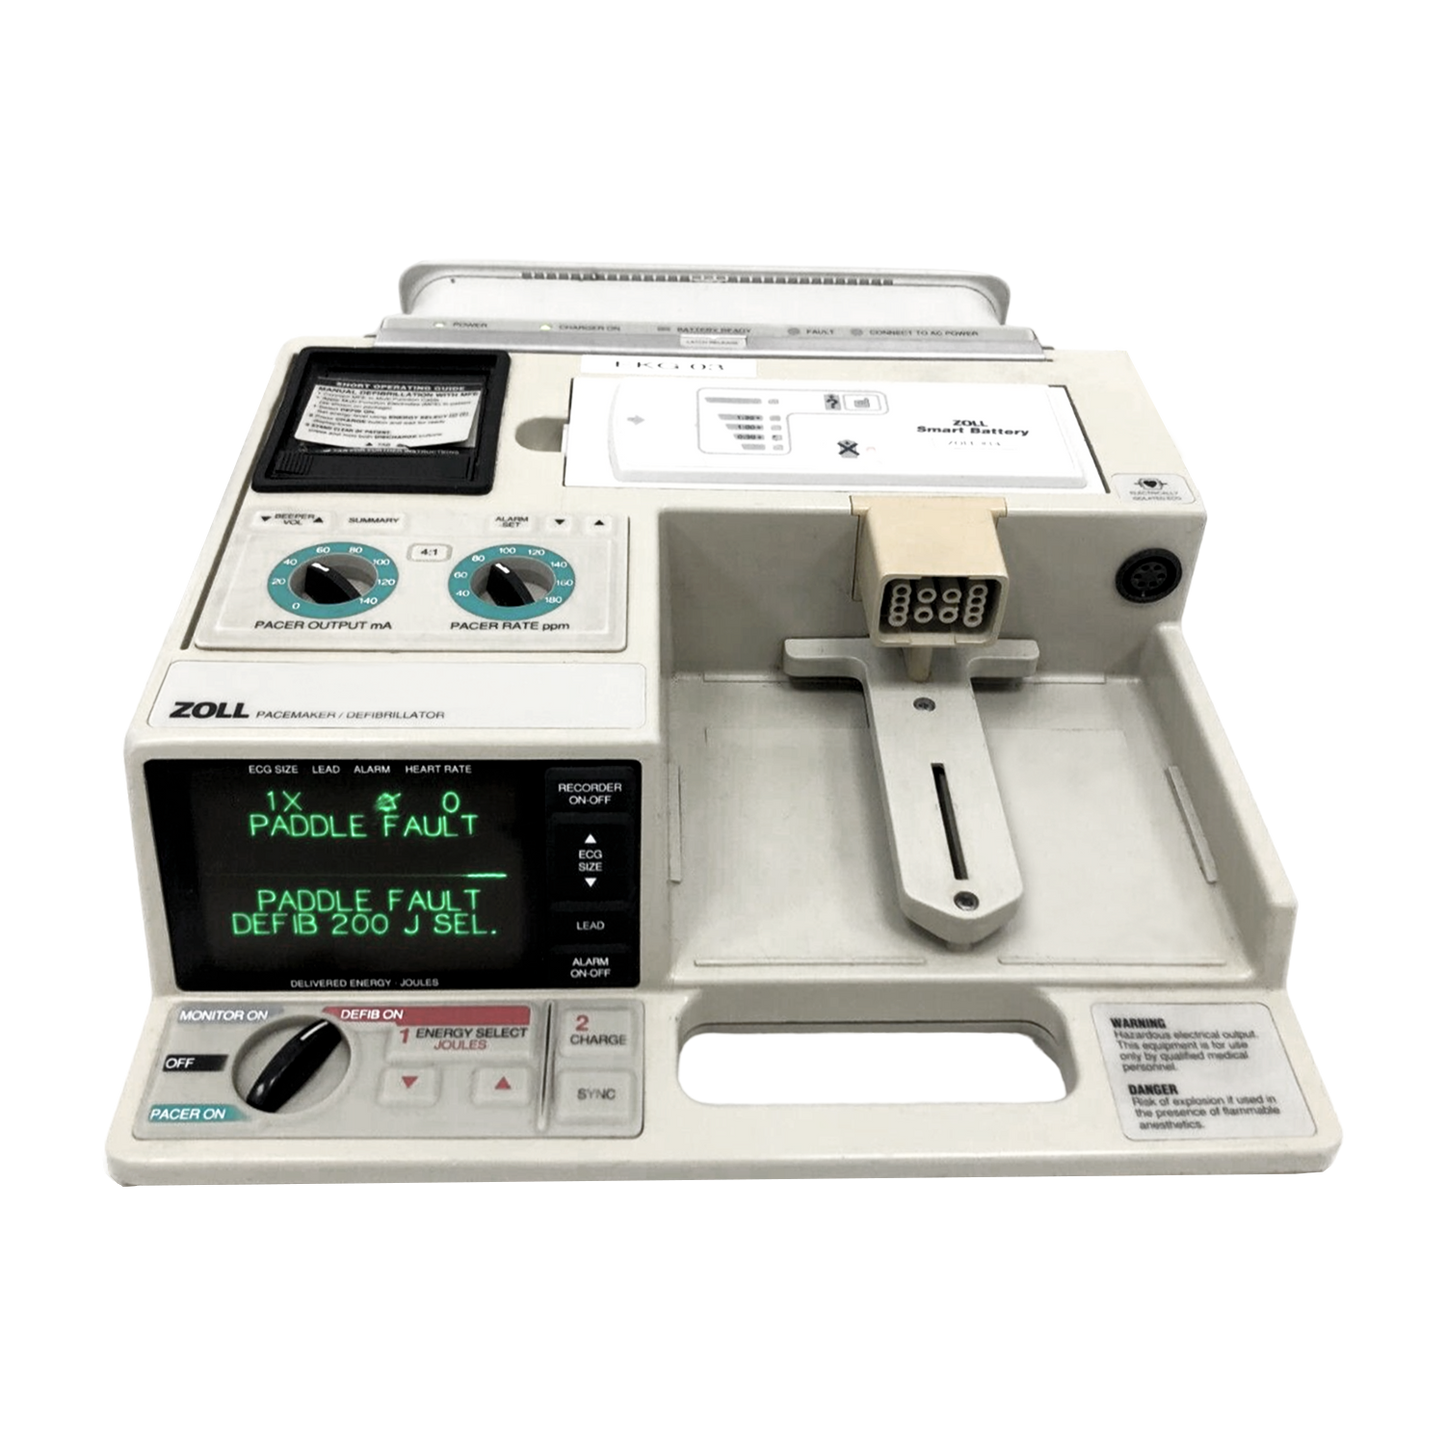 Zoll PD 1400 Defibrillator/Pacemaker